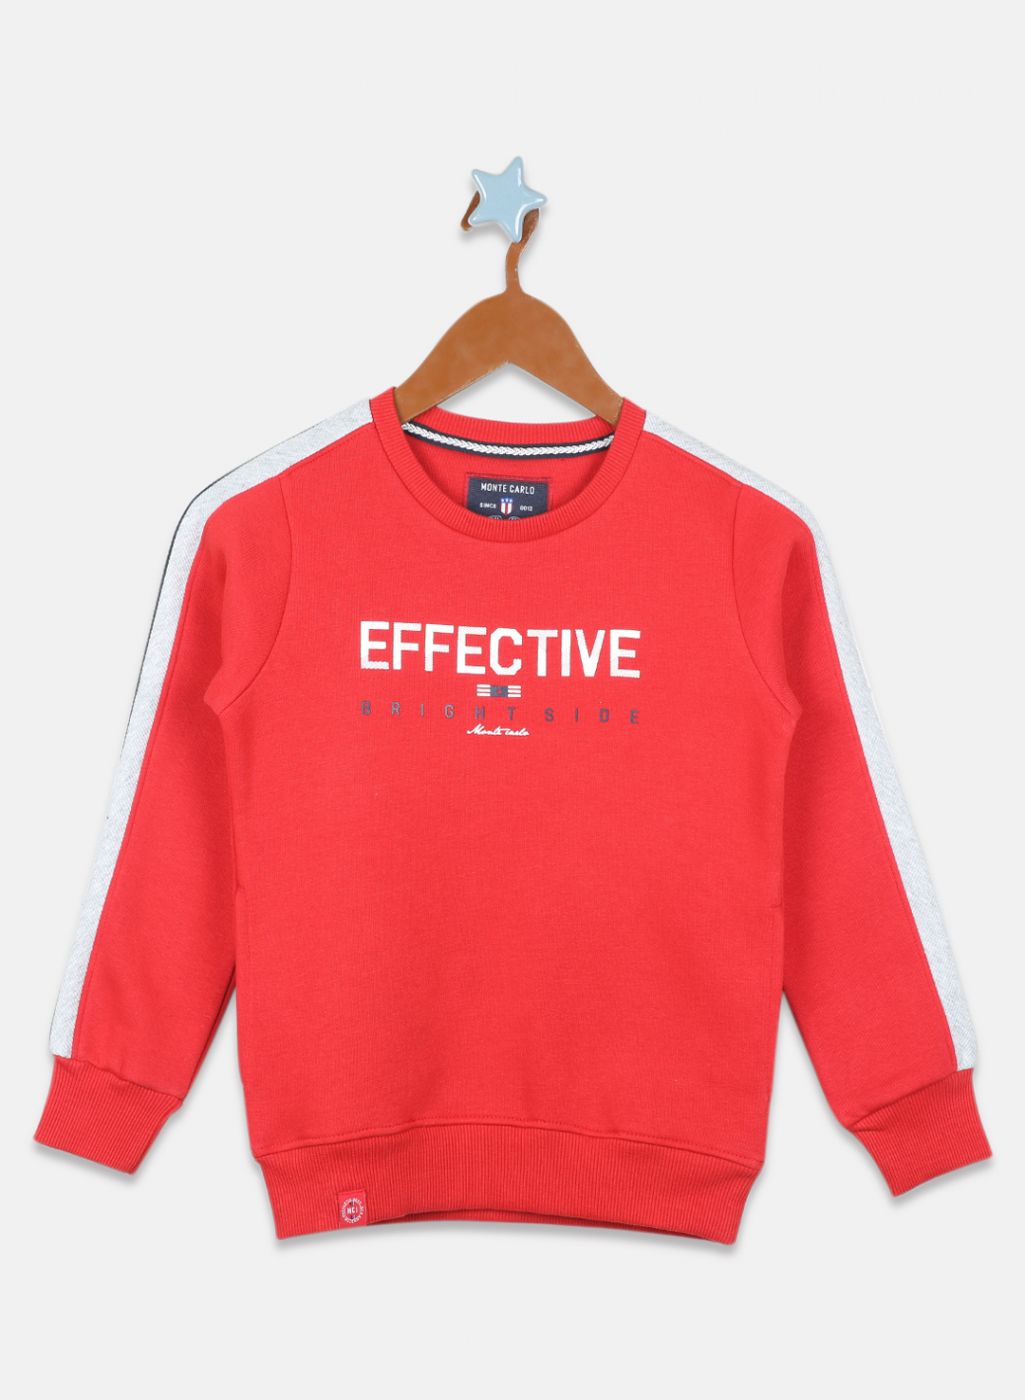 Buy Boys Red Printed Sweatshirt Online in India - Monte Carlo